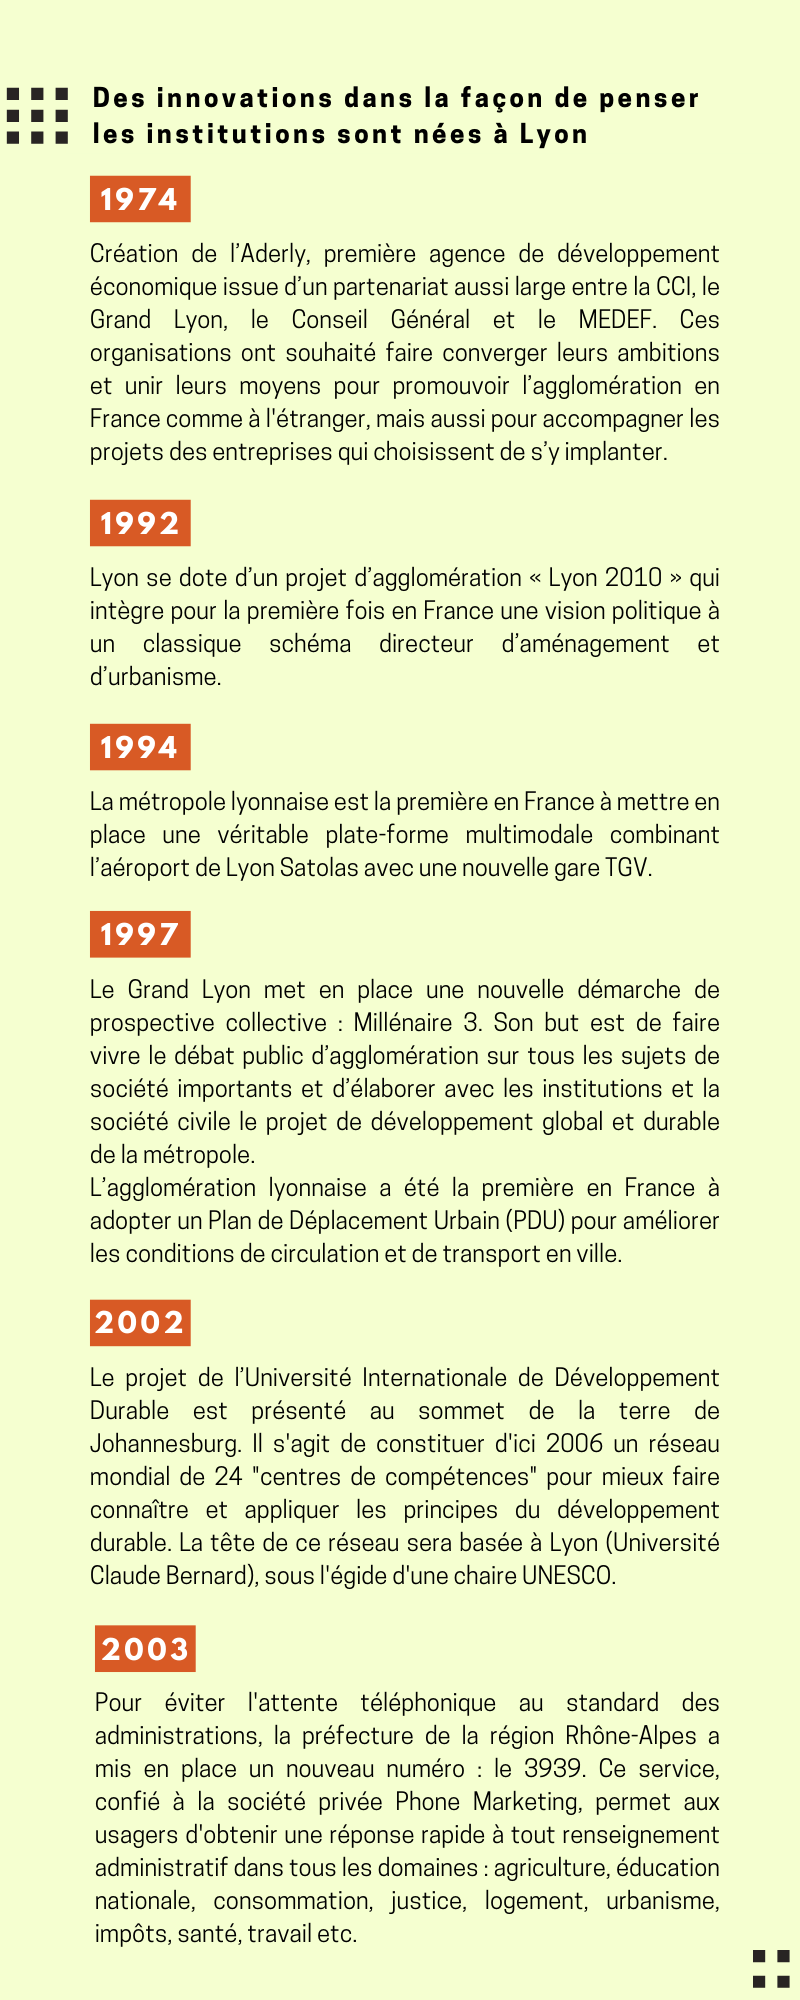 Chronologie des innovations dans la façon de penser les institutions nées à Lyon de 1974 à 2003